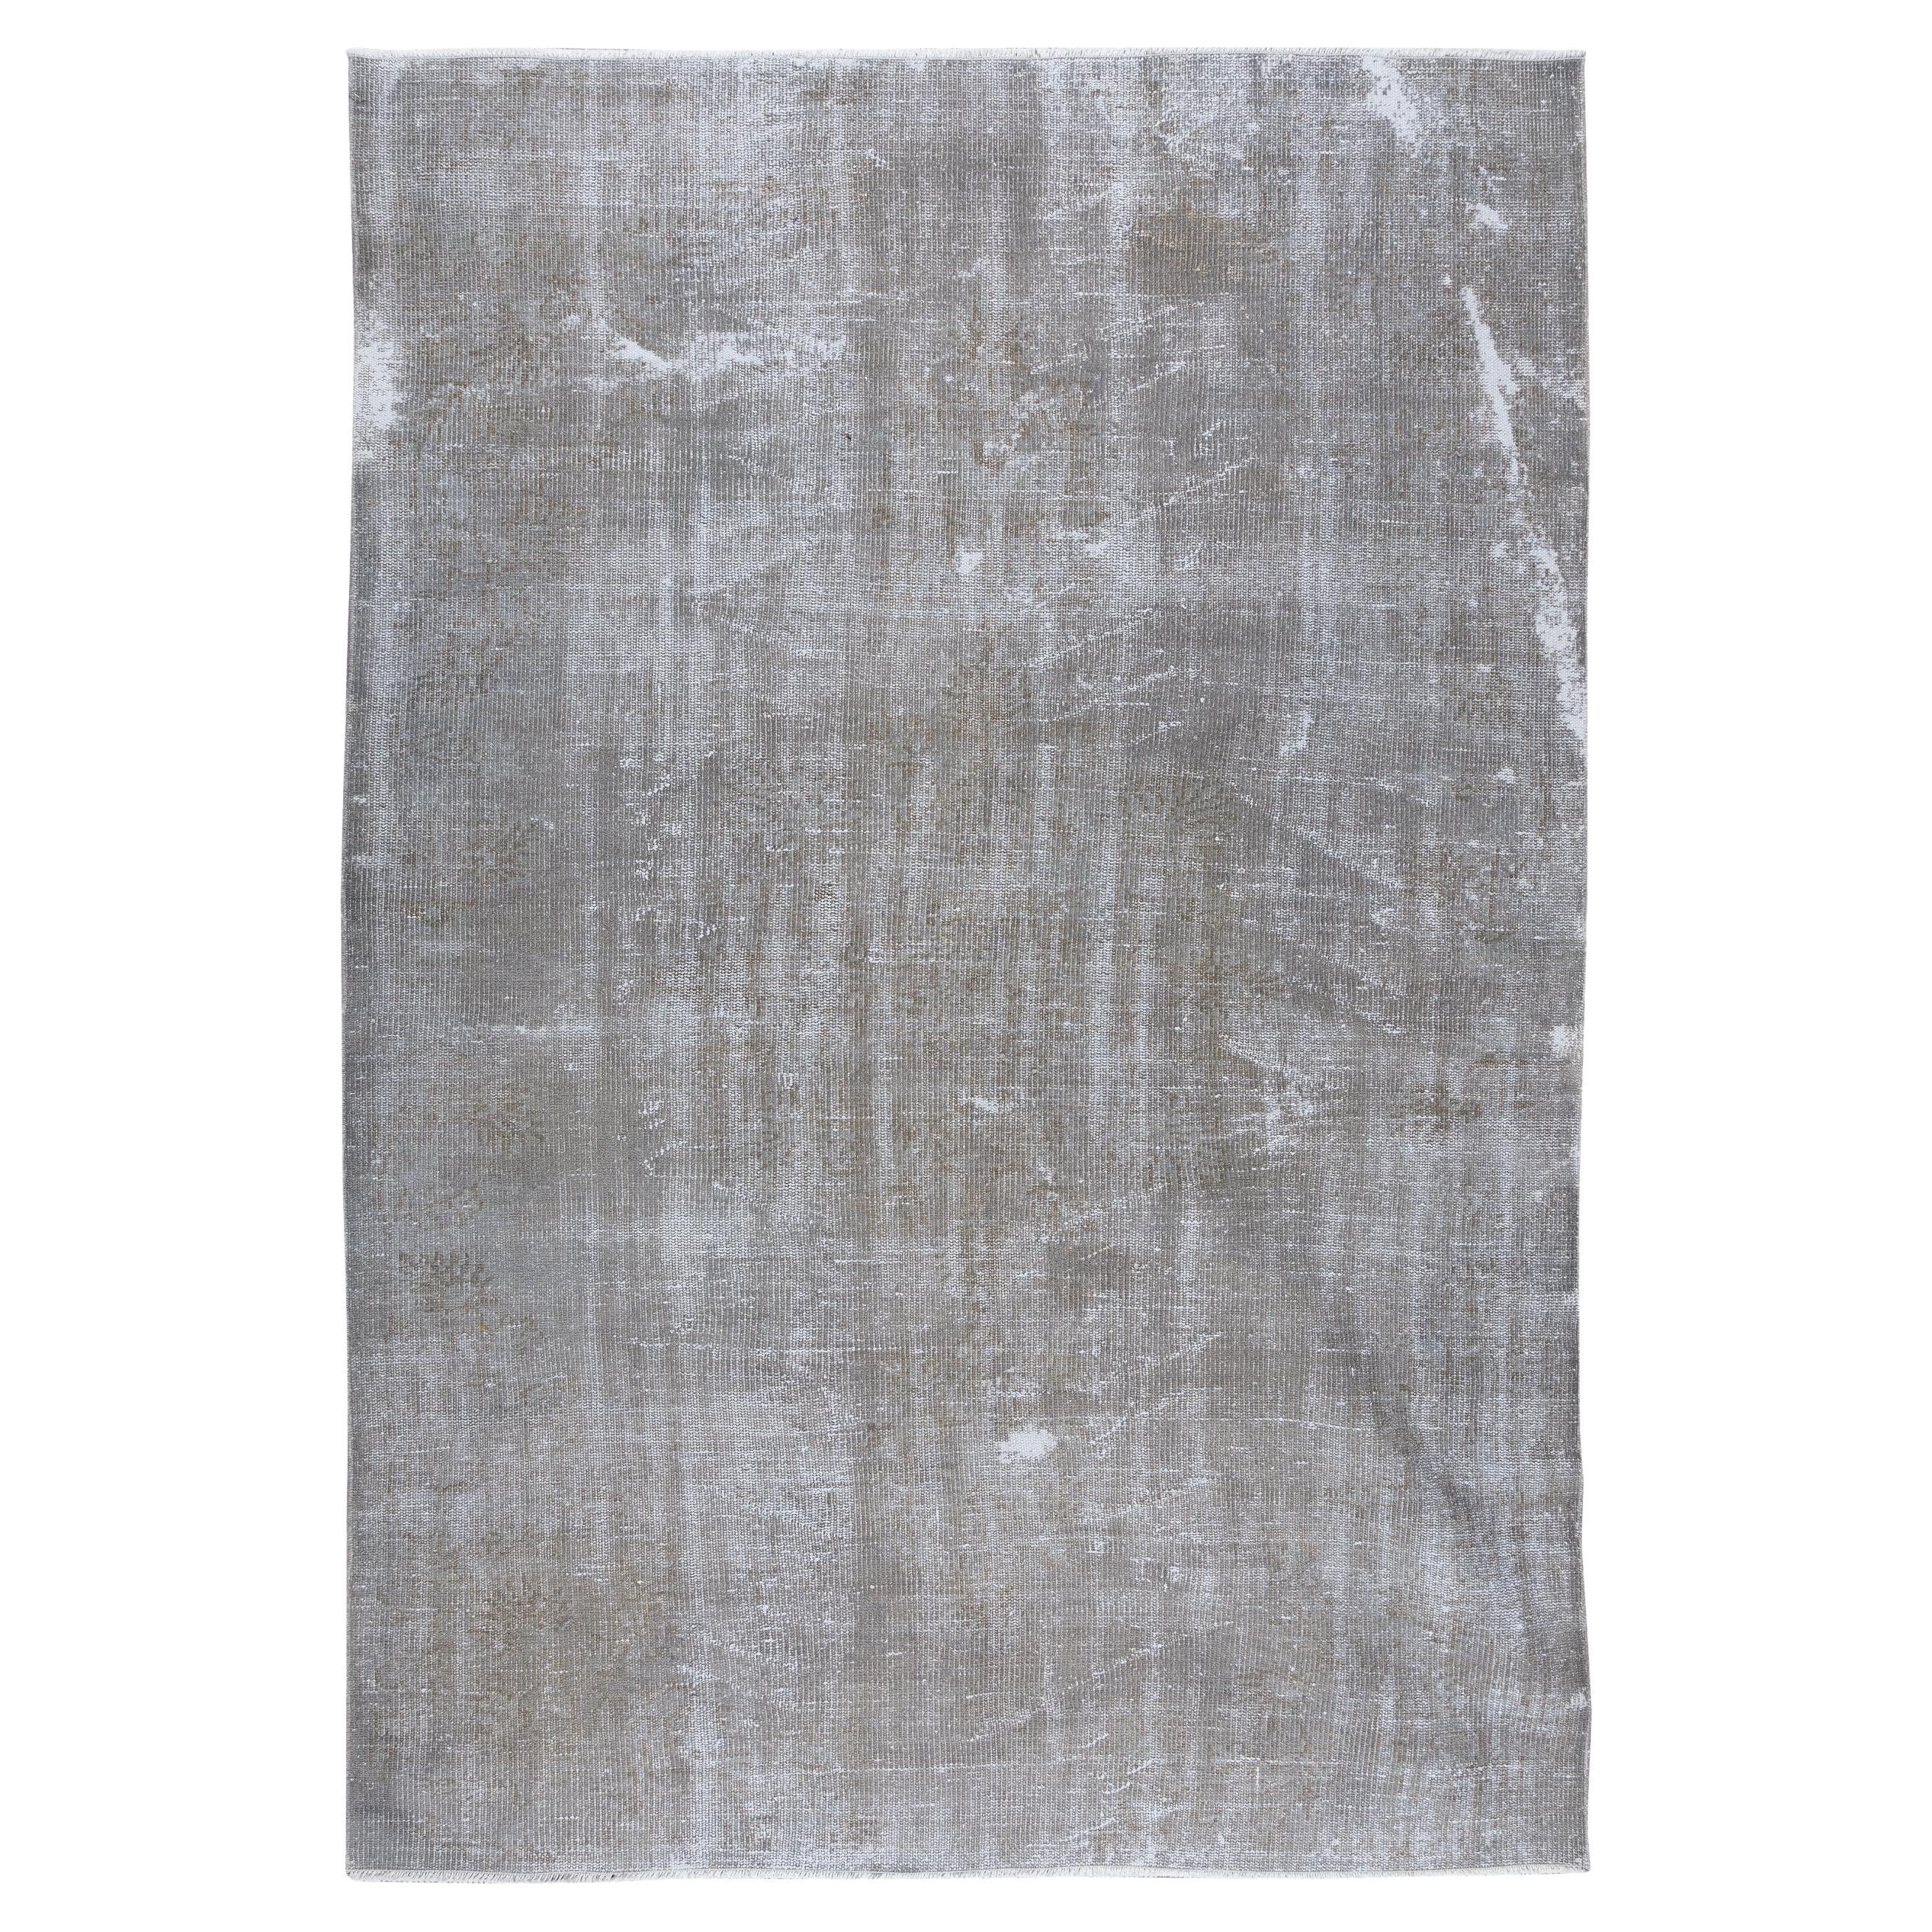 5.6x8 Ft Distressed 1960er Jahre Handgefertigter grauer, zeitgenössischer türkischer Teppich